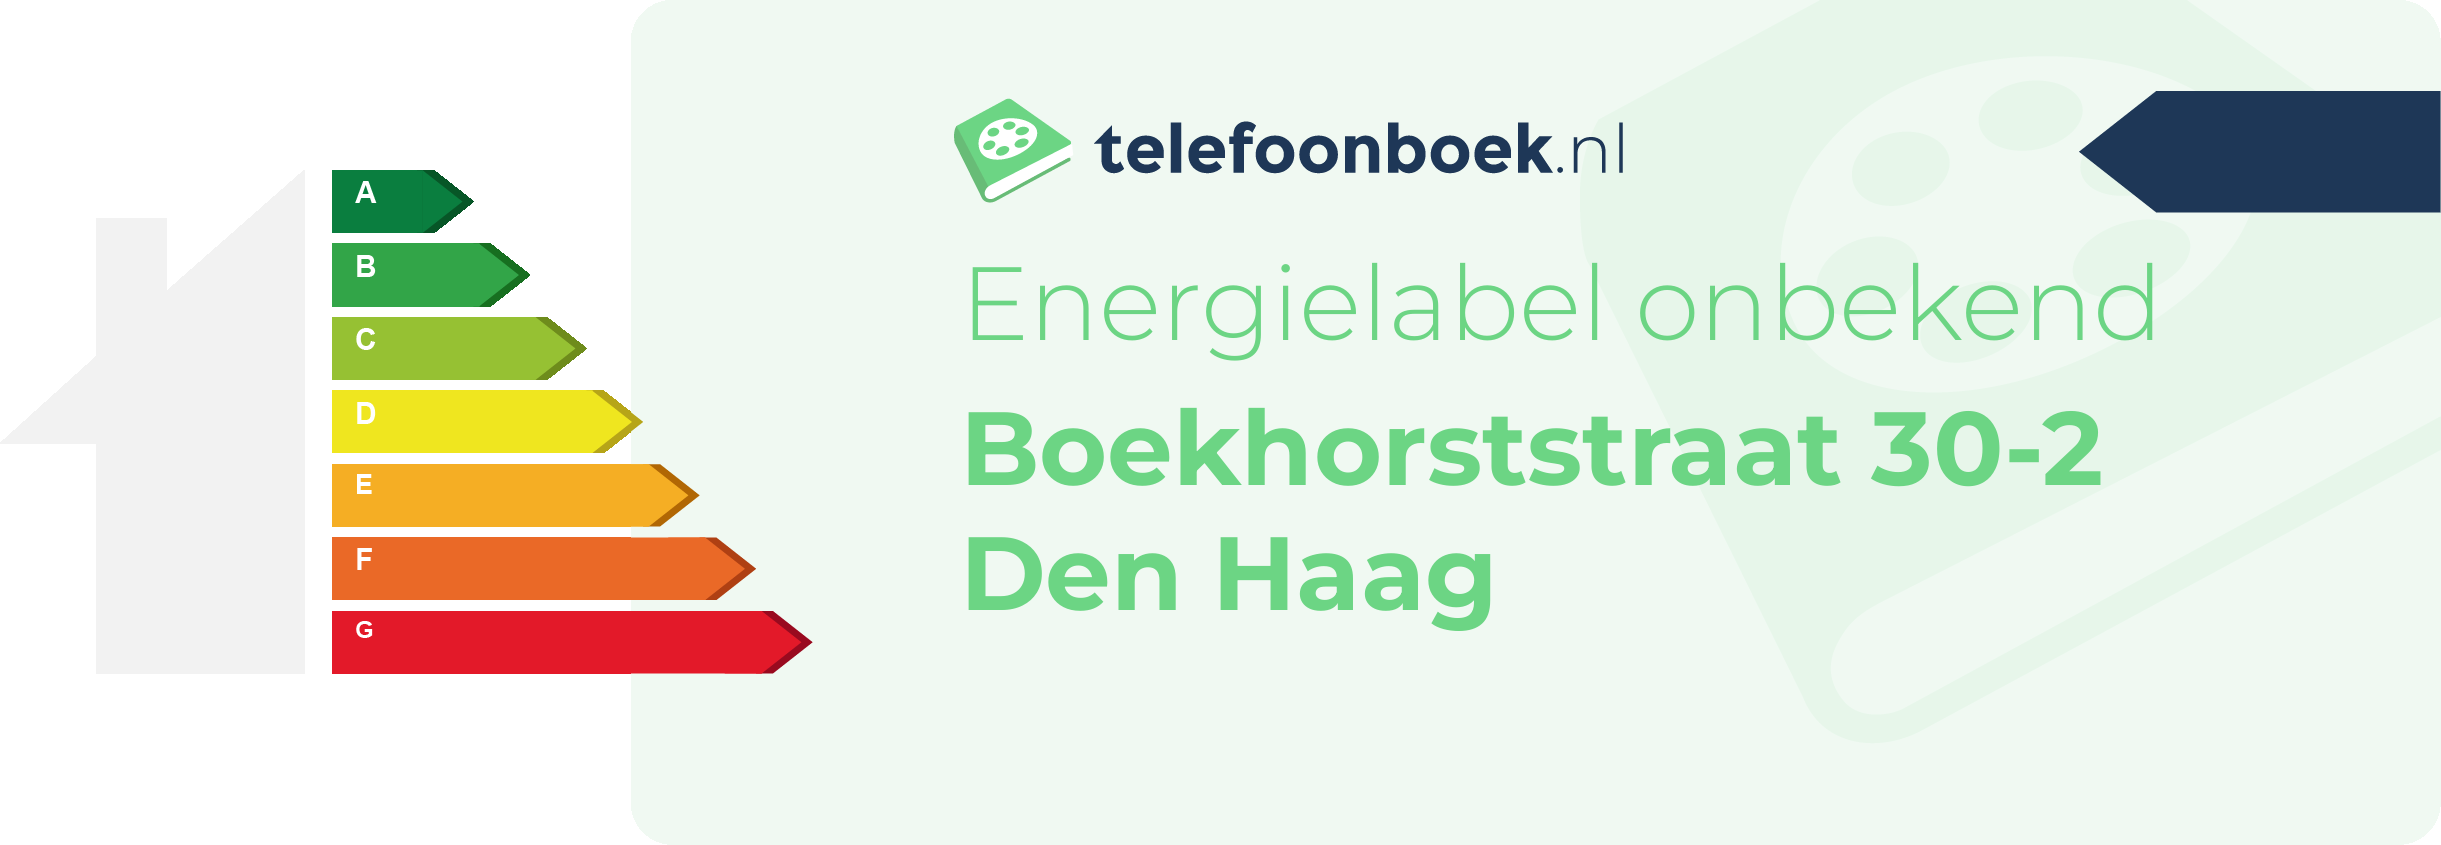 Energielabel Boekhorststraat 30-2 Den Haag